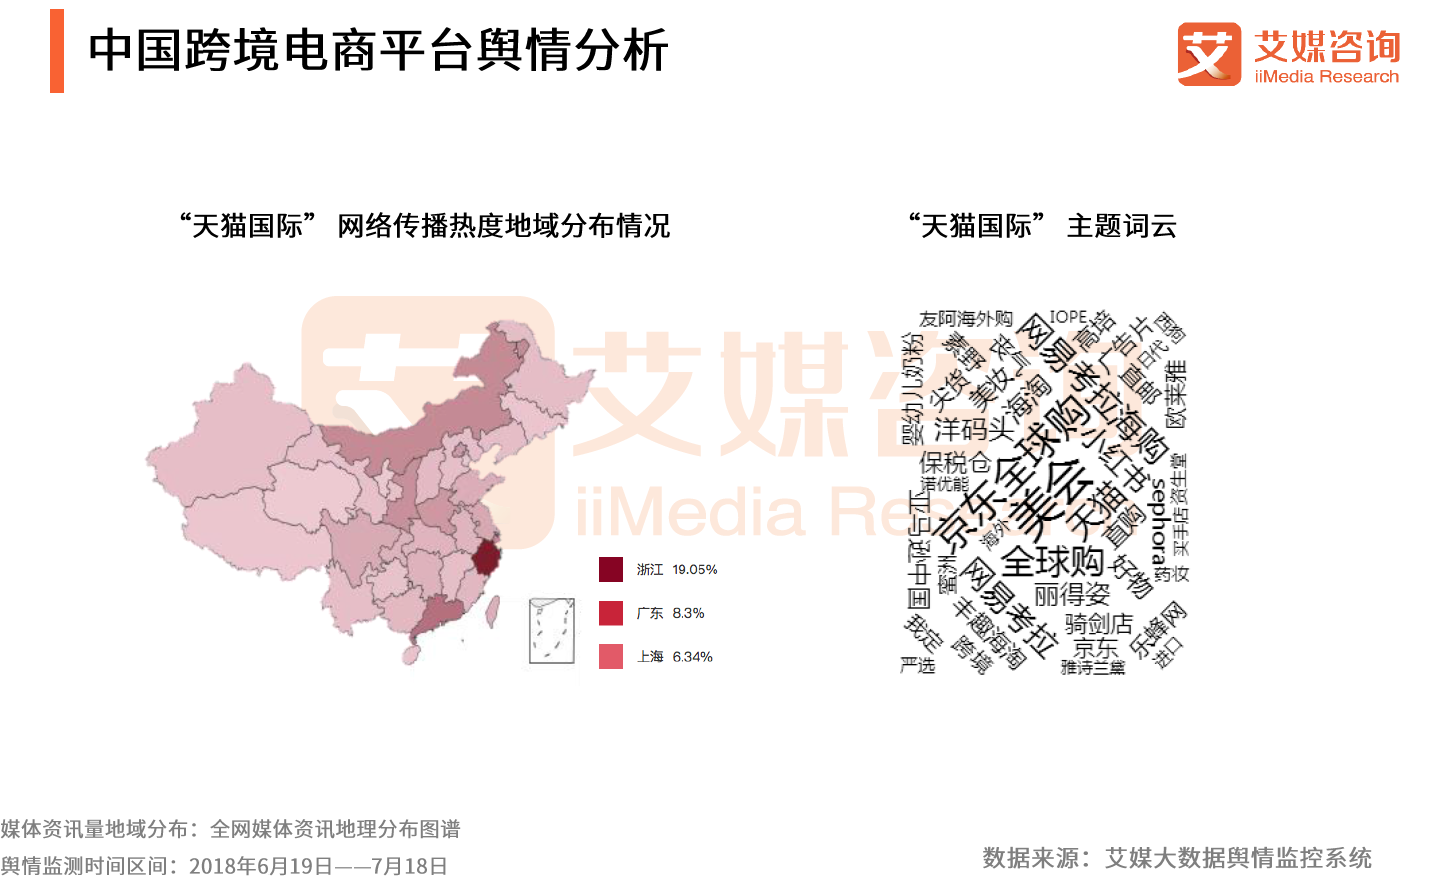 18上半年中国跨境电商行业监测报告 资讯新闻 小熊比尔之家官网